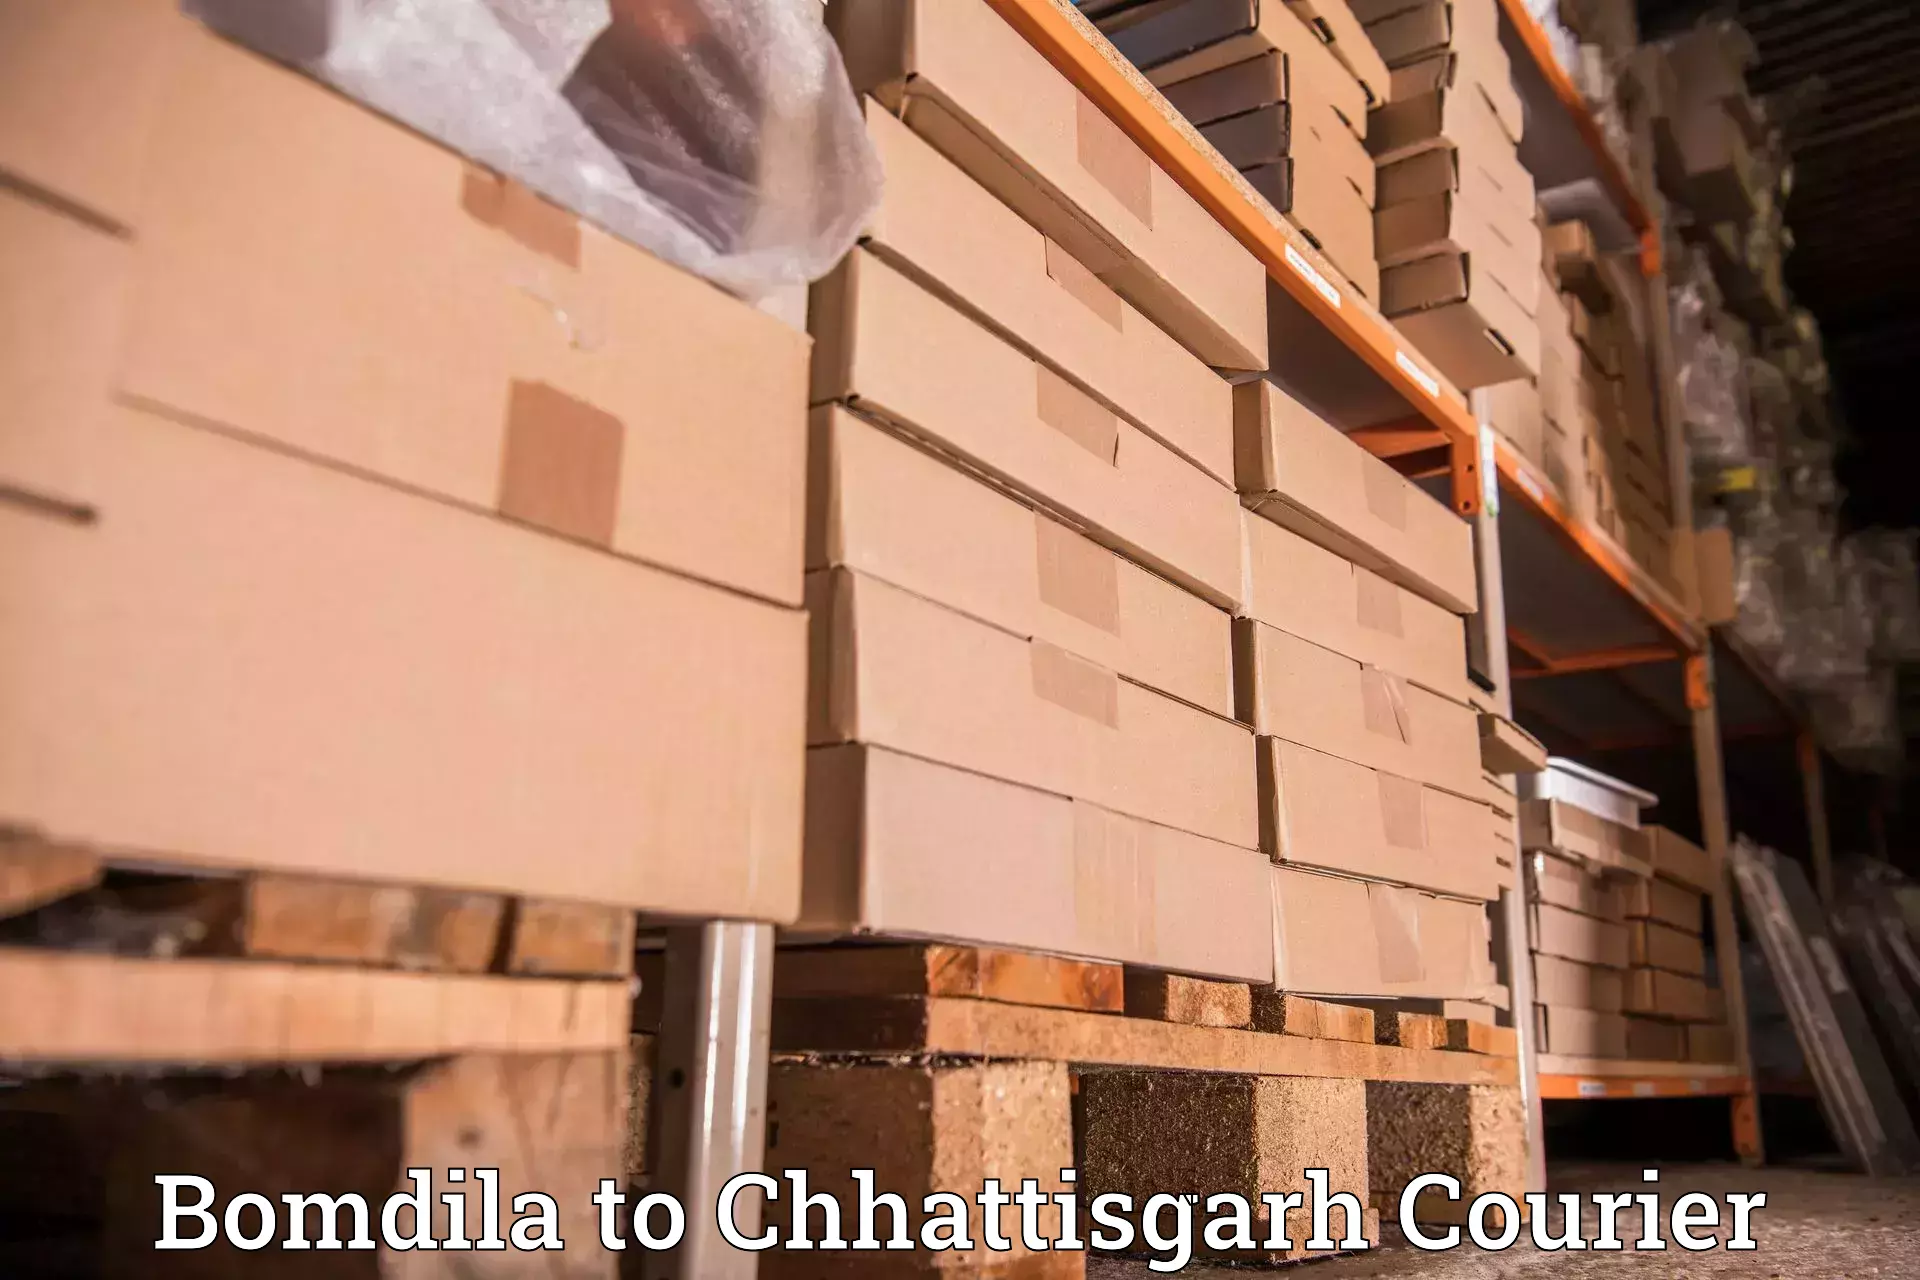 Customizable shipping options Bomdila to Chhattisgarh